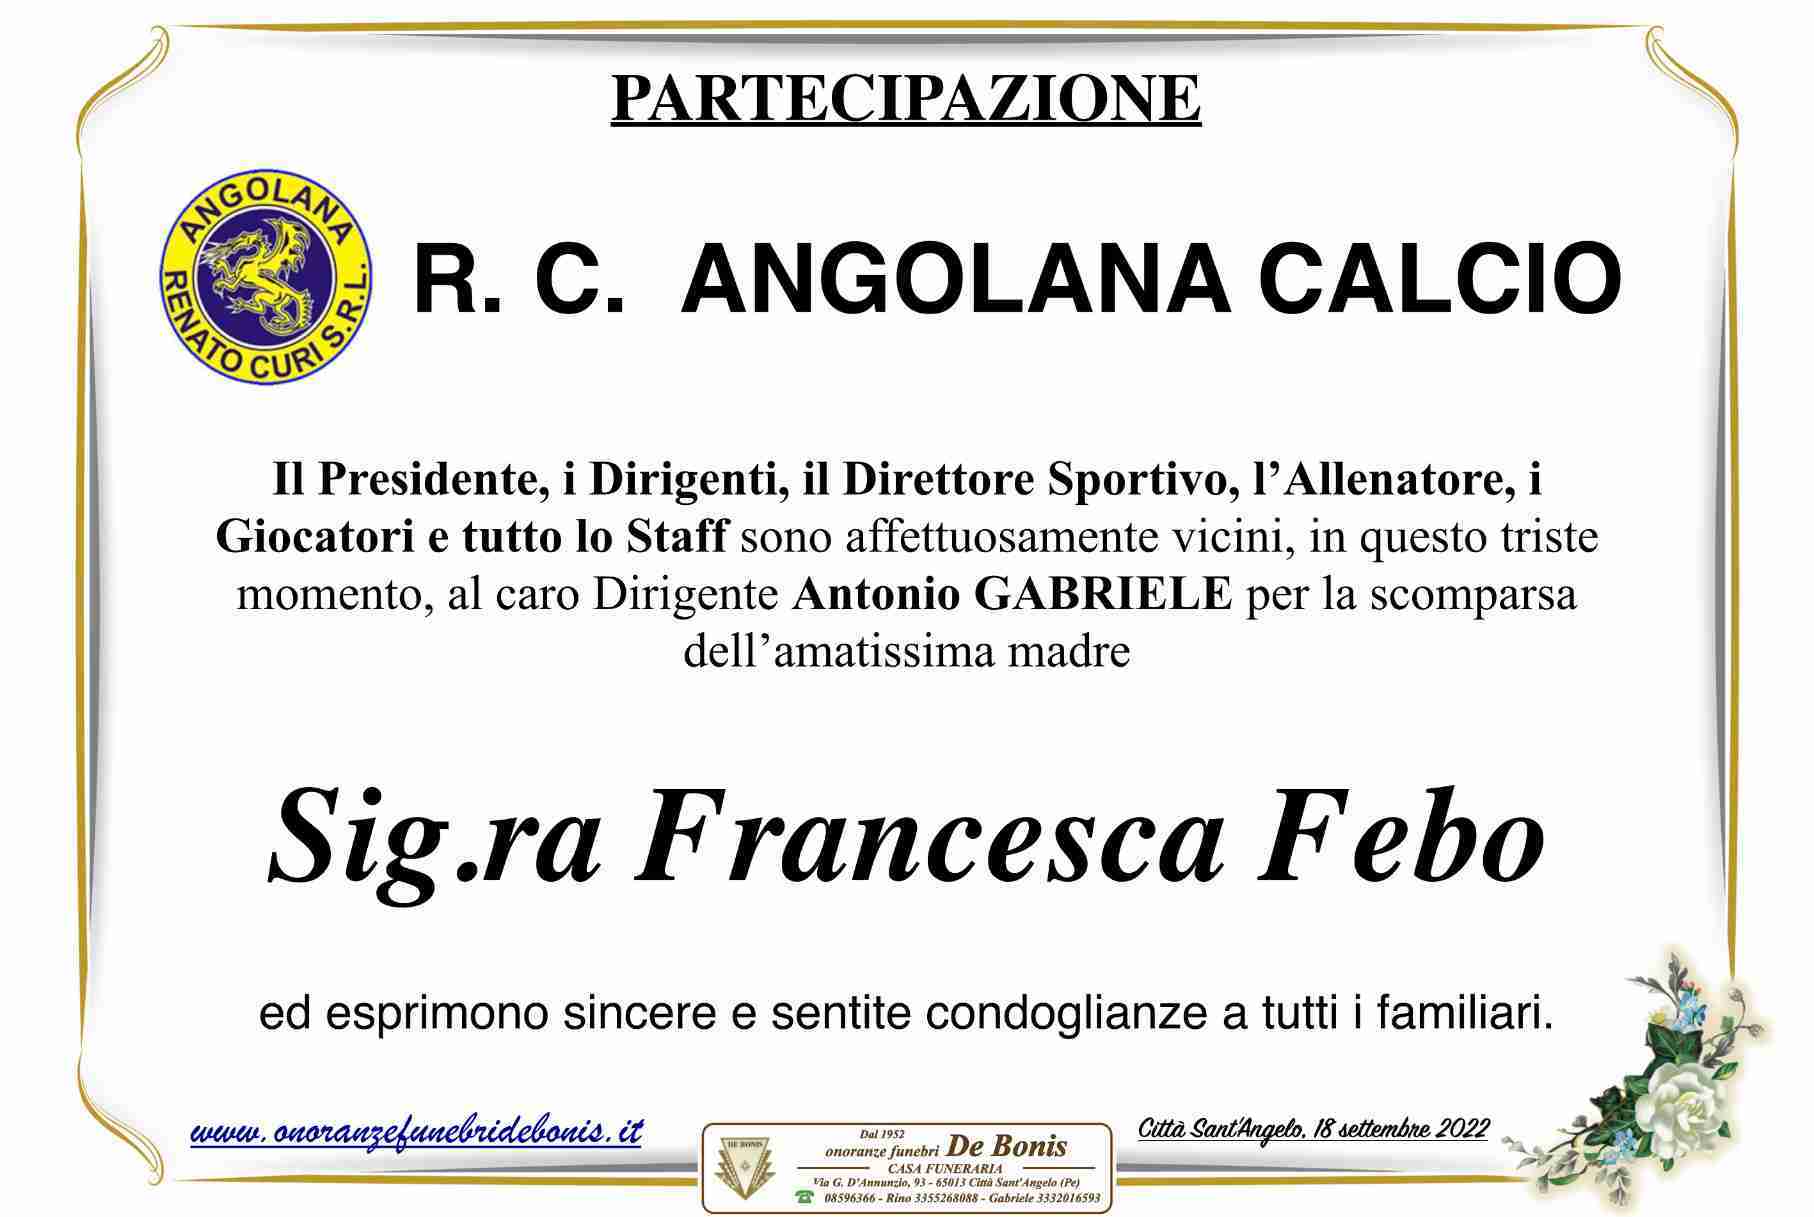 Francesca Febo